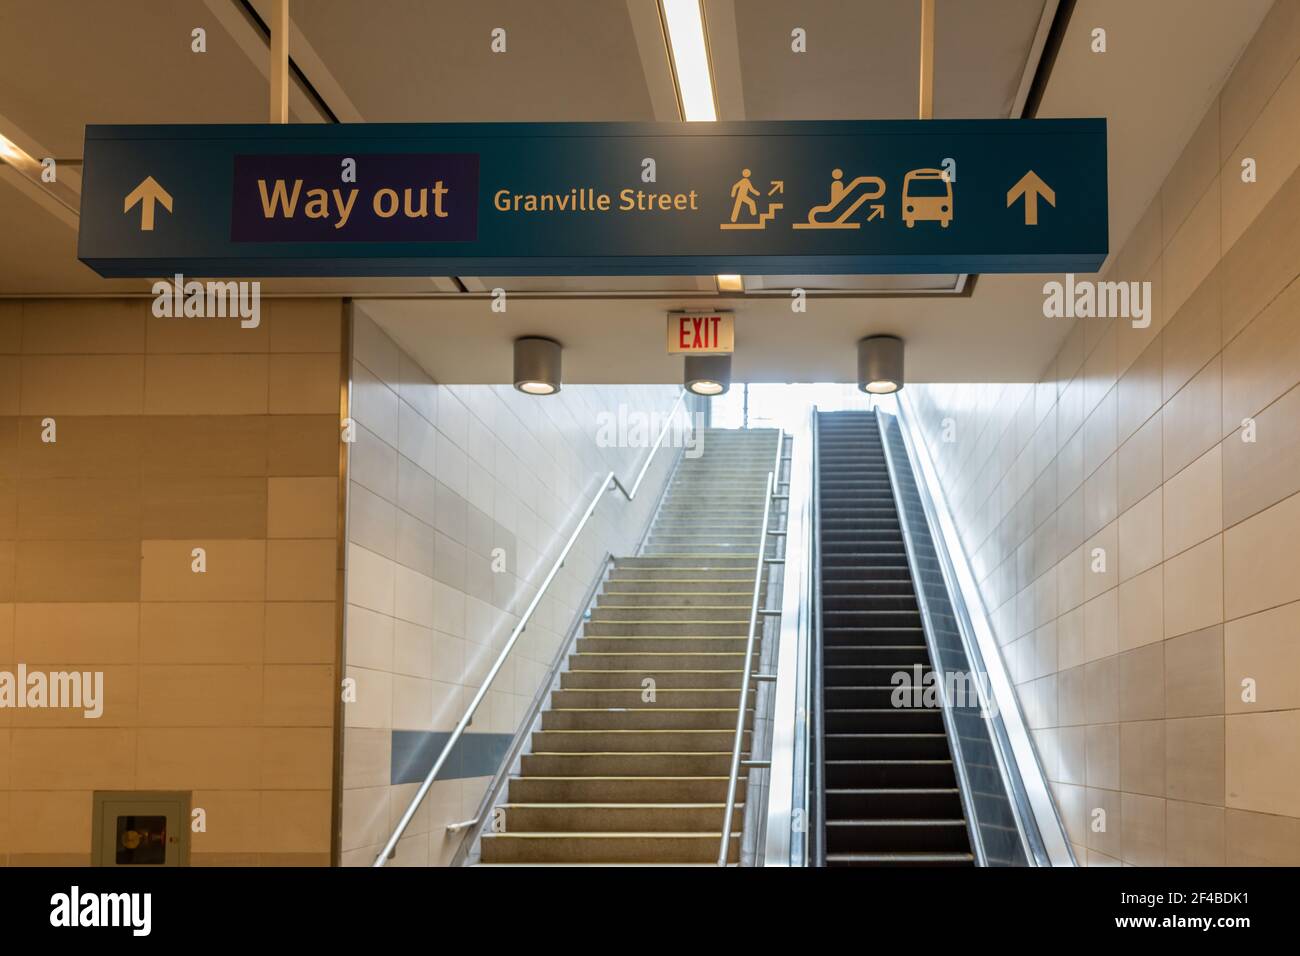 Intérieur de l'escalier roulant de la station Waterfront. Ligne de métro SkyTrain Canada. Vancouver, Canada. Banque D'Images